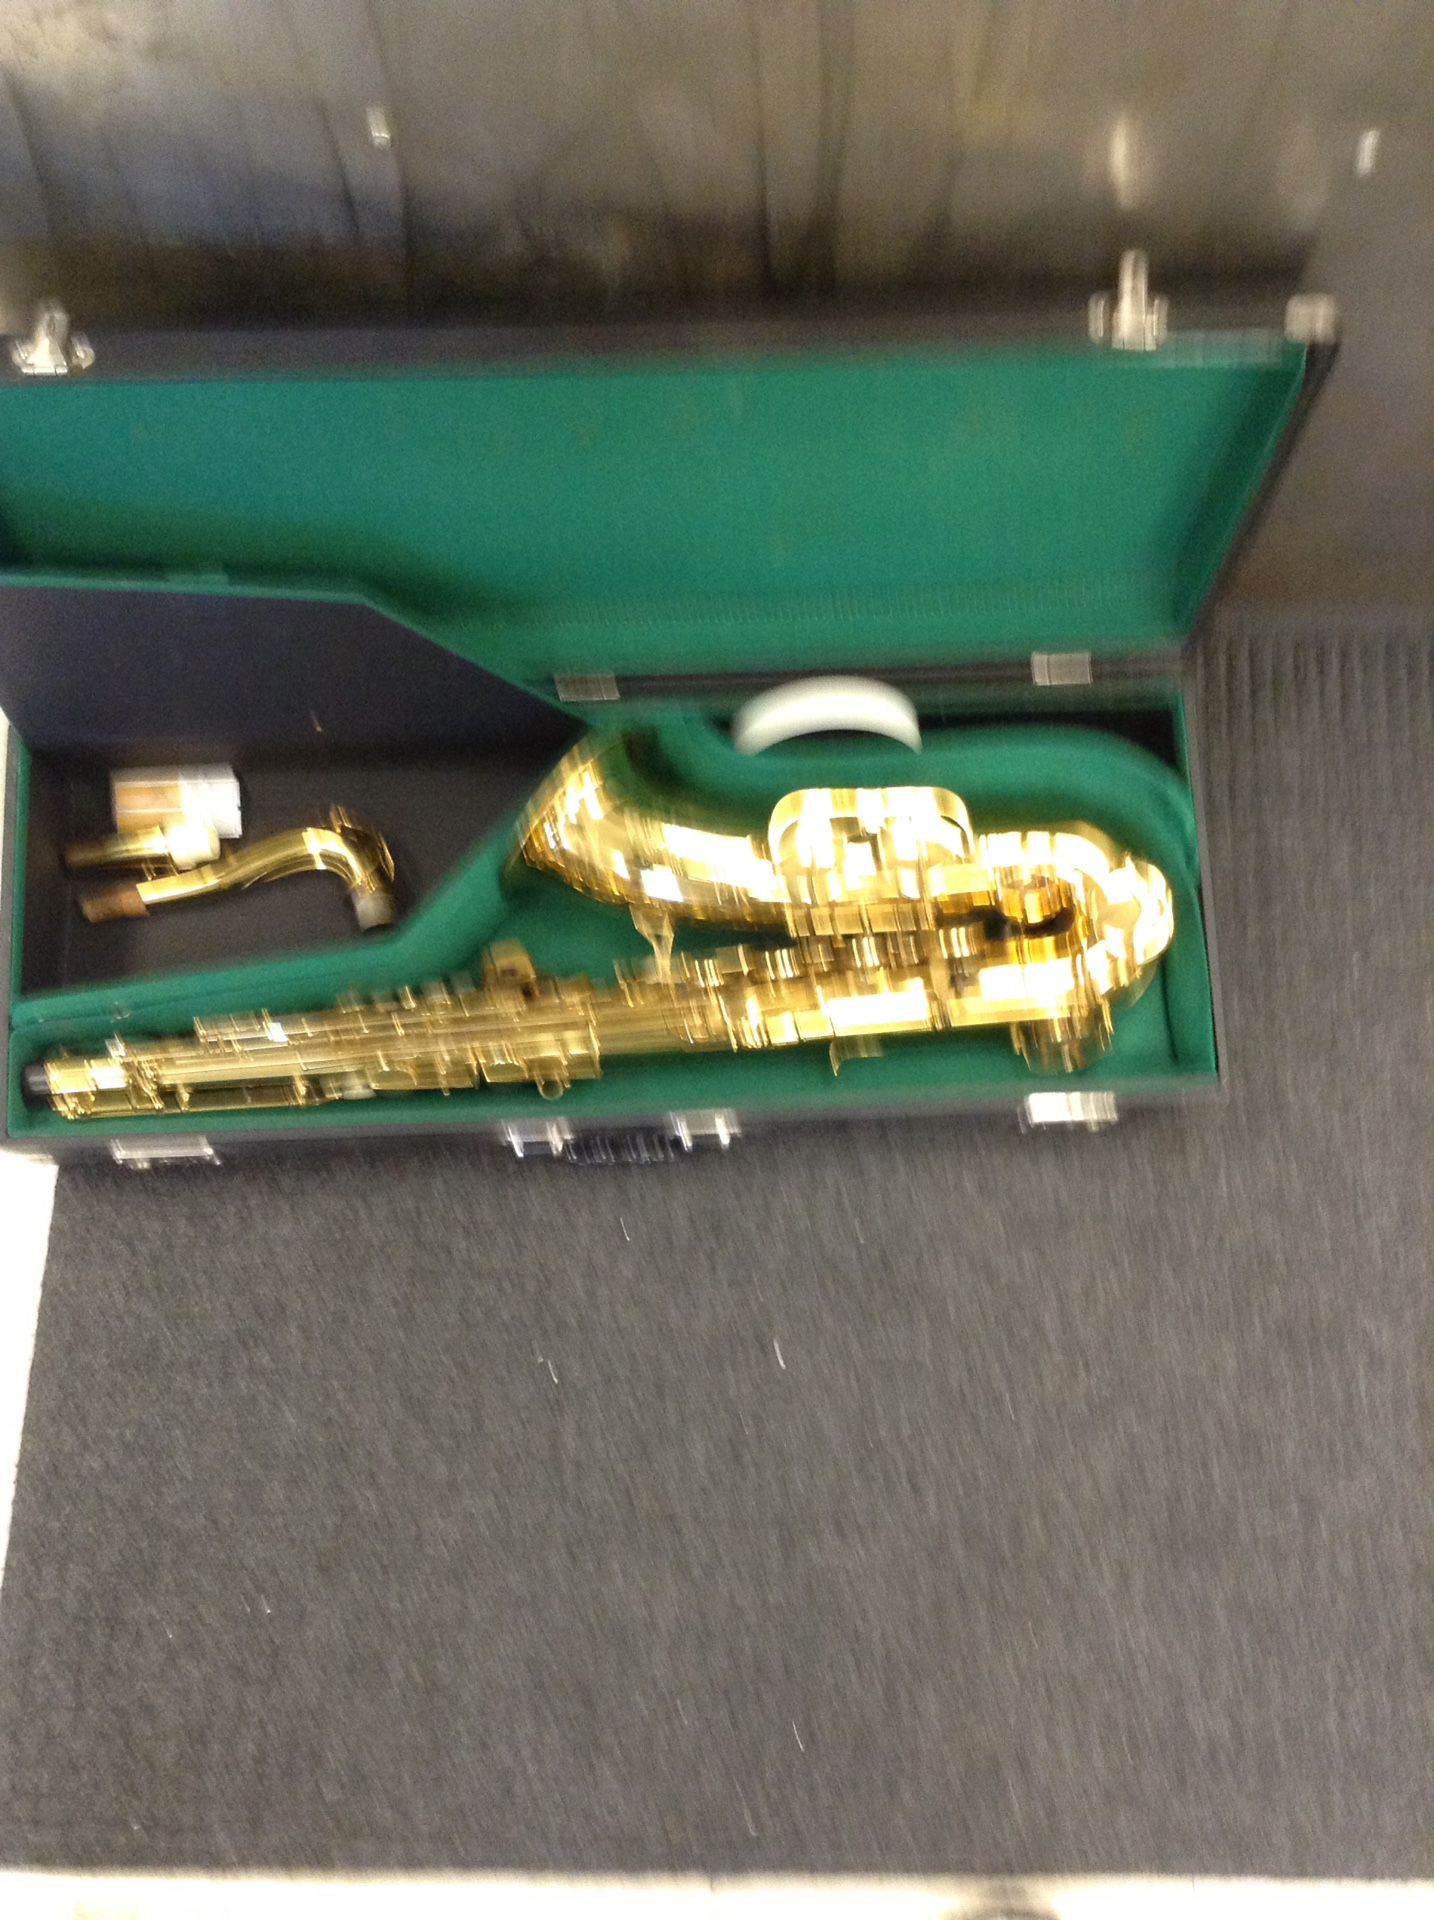 Kohlert regent saxophone